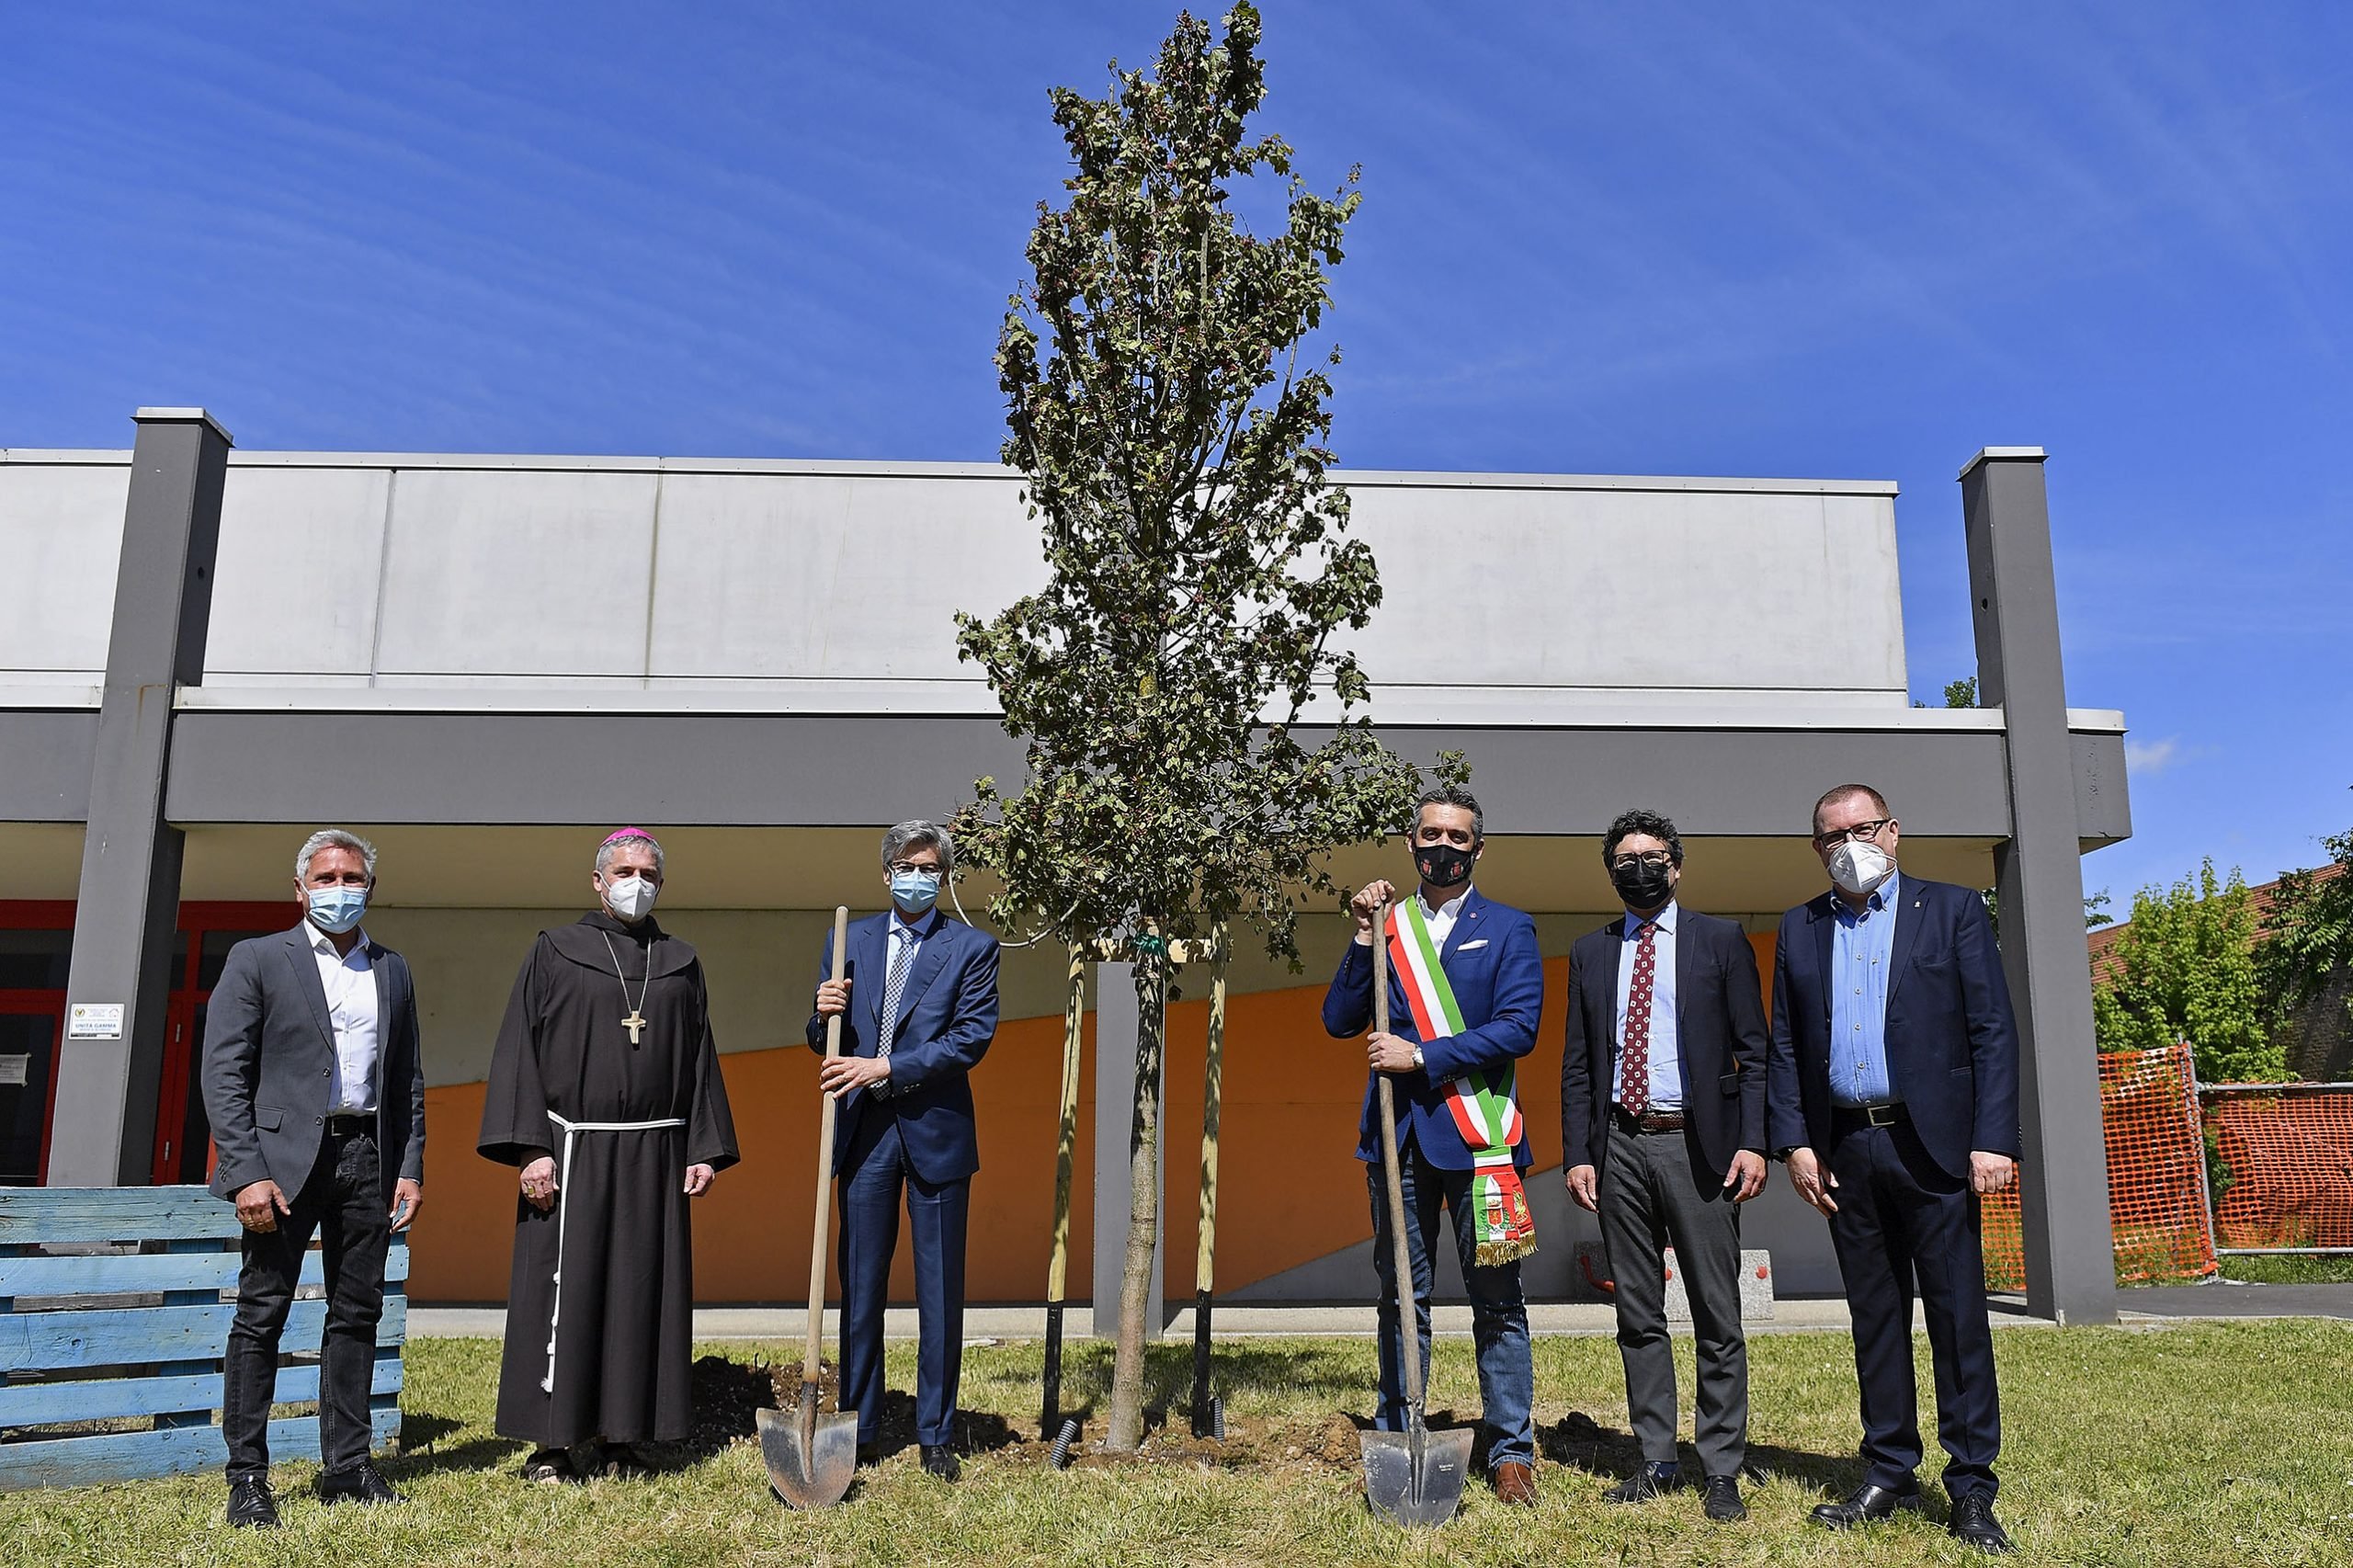 Derthona Basket e Riccoboni Holding pianteranno 34 nuovi alberi